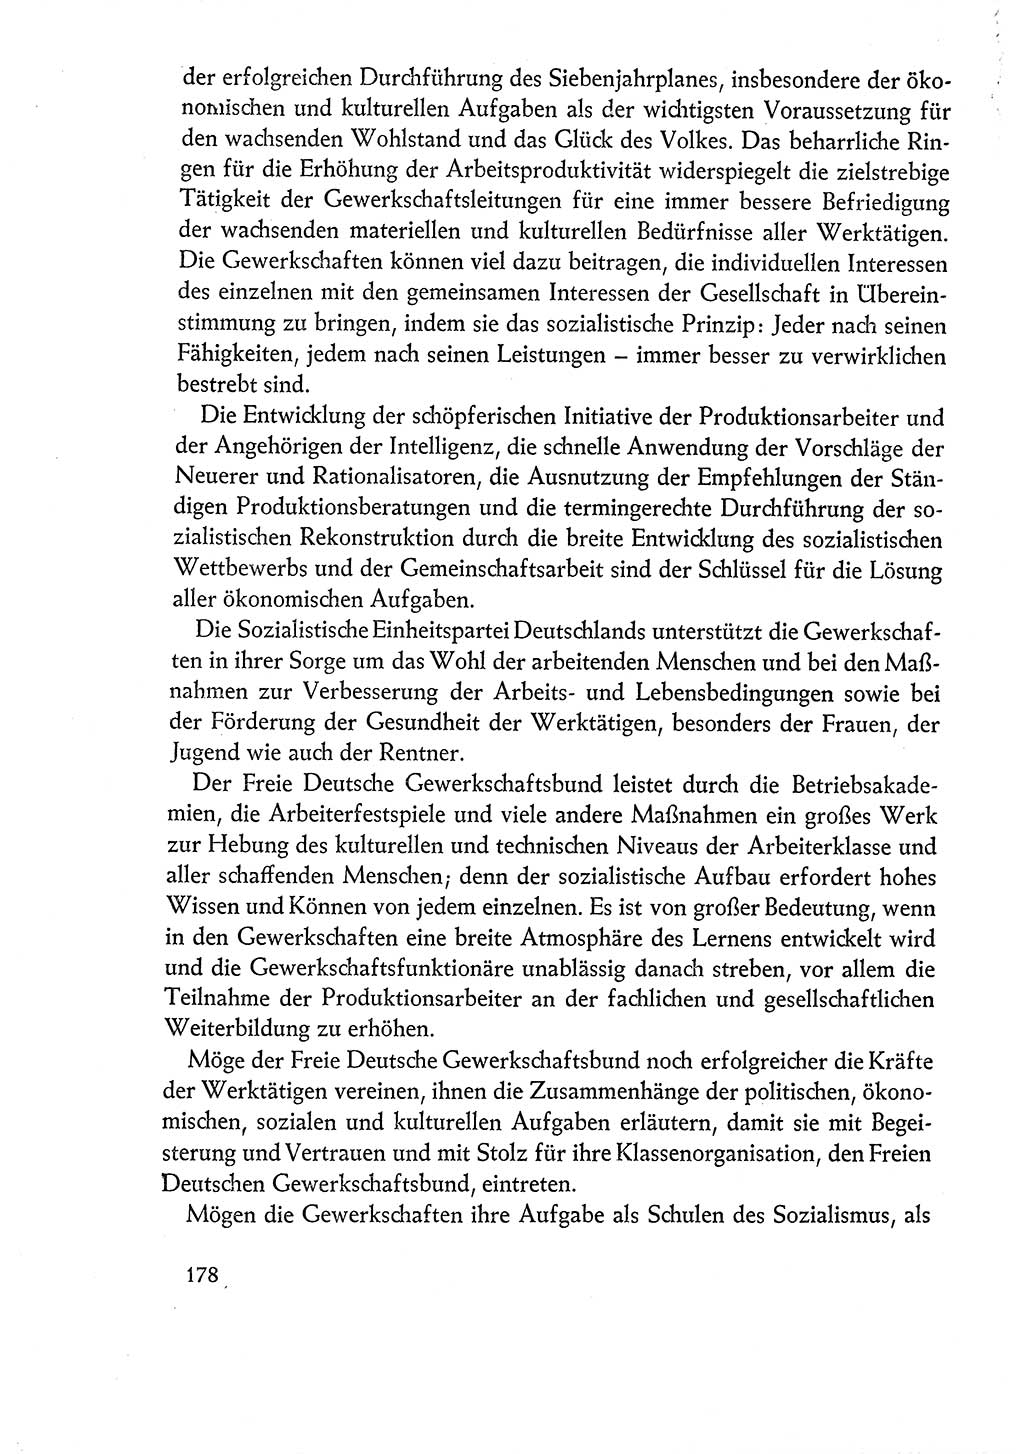 Dokumente der Sozialistischen Einheitspartei Deutschlands (SED) [Deutsche Demokratische Republik (DDR)] 1960-1961, Seite 178 (Dok. SED DDR 1960-1961, S. 178)